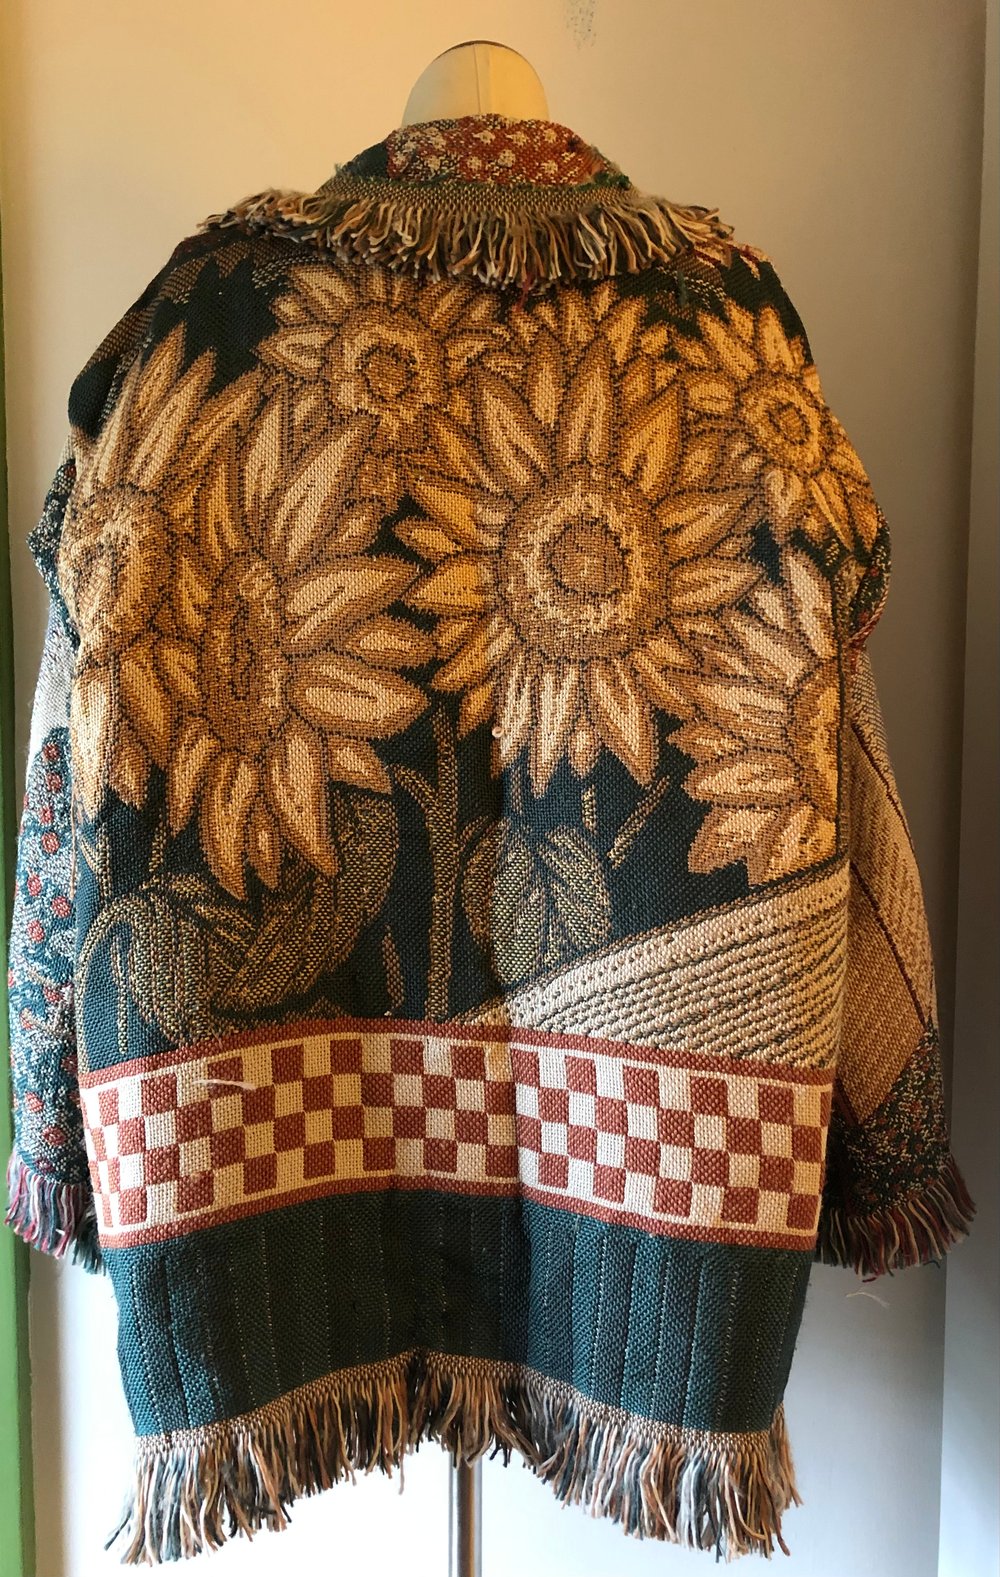 Sunflower/Apple picking fringe tapestry jacket